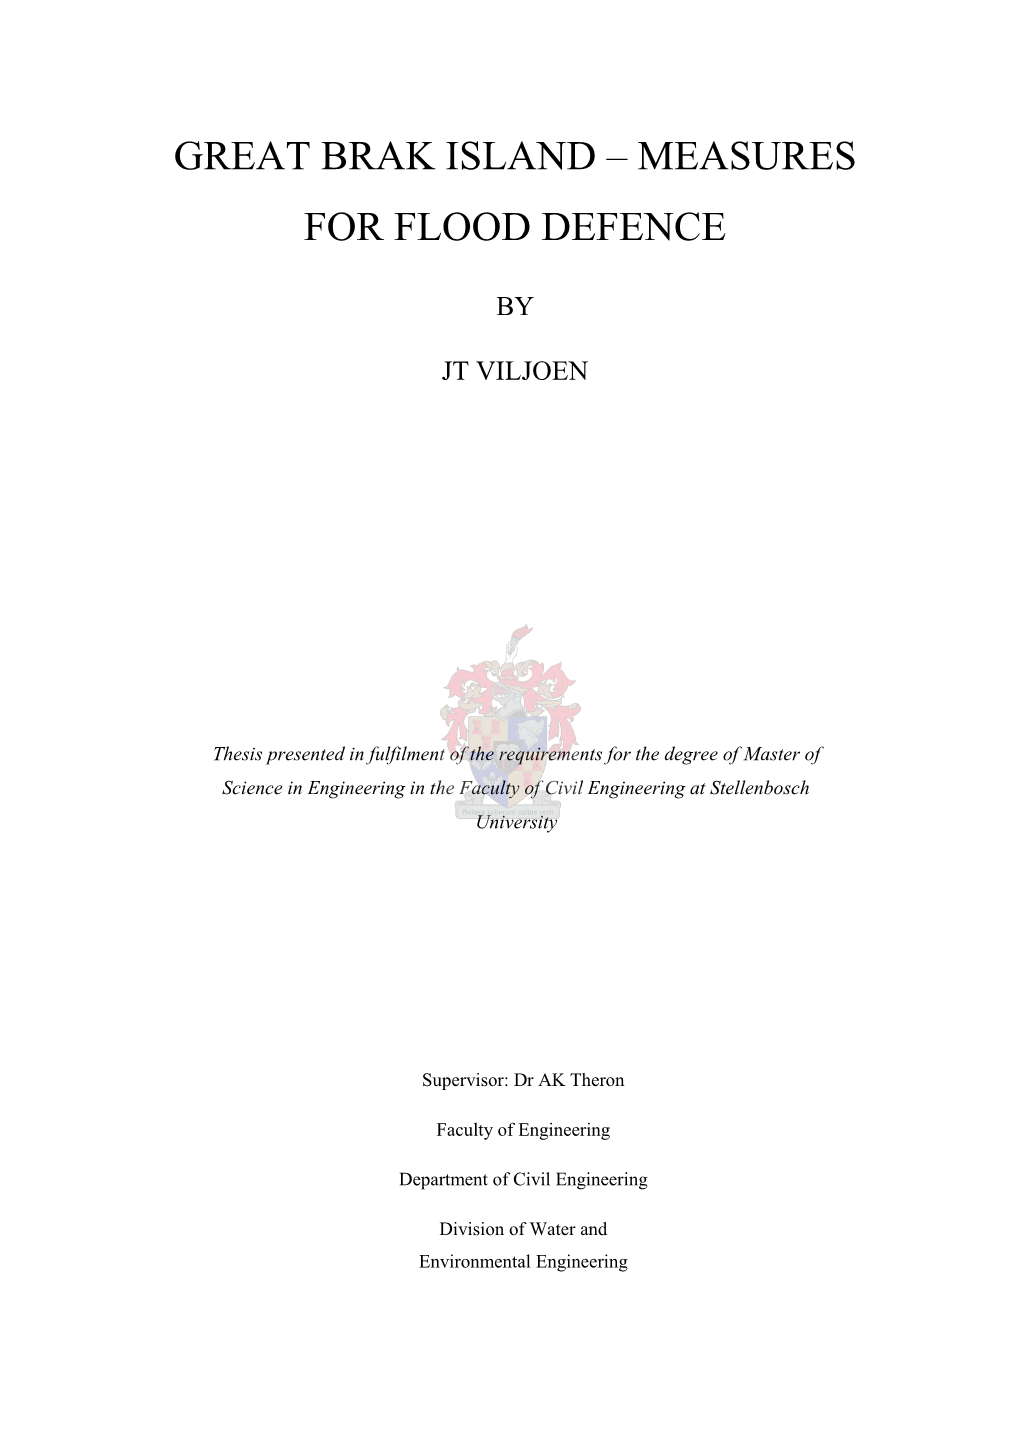 Great Brak Island – Measures for Flood Defence